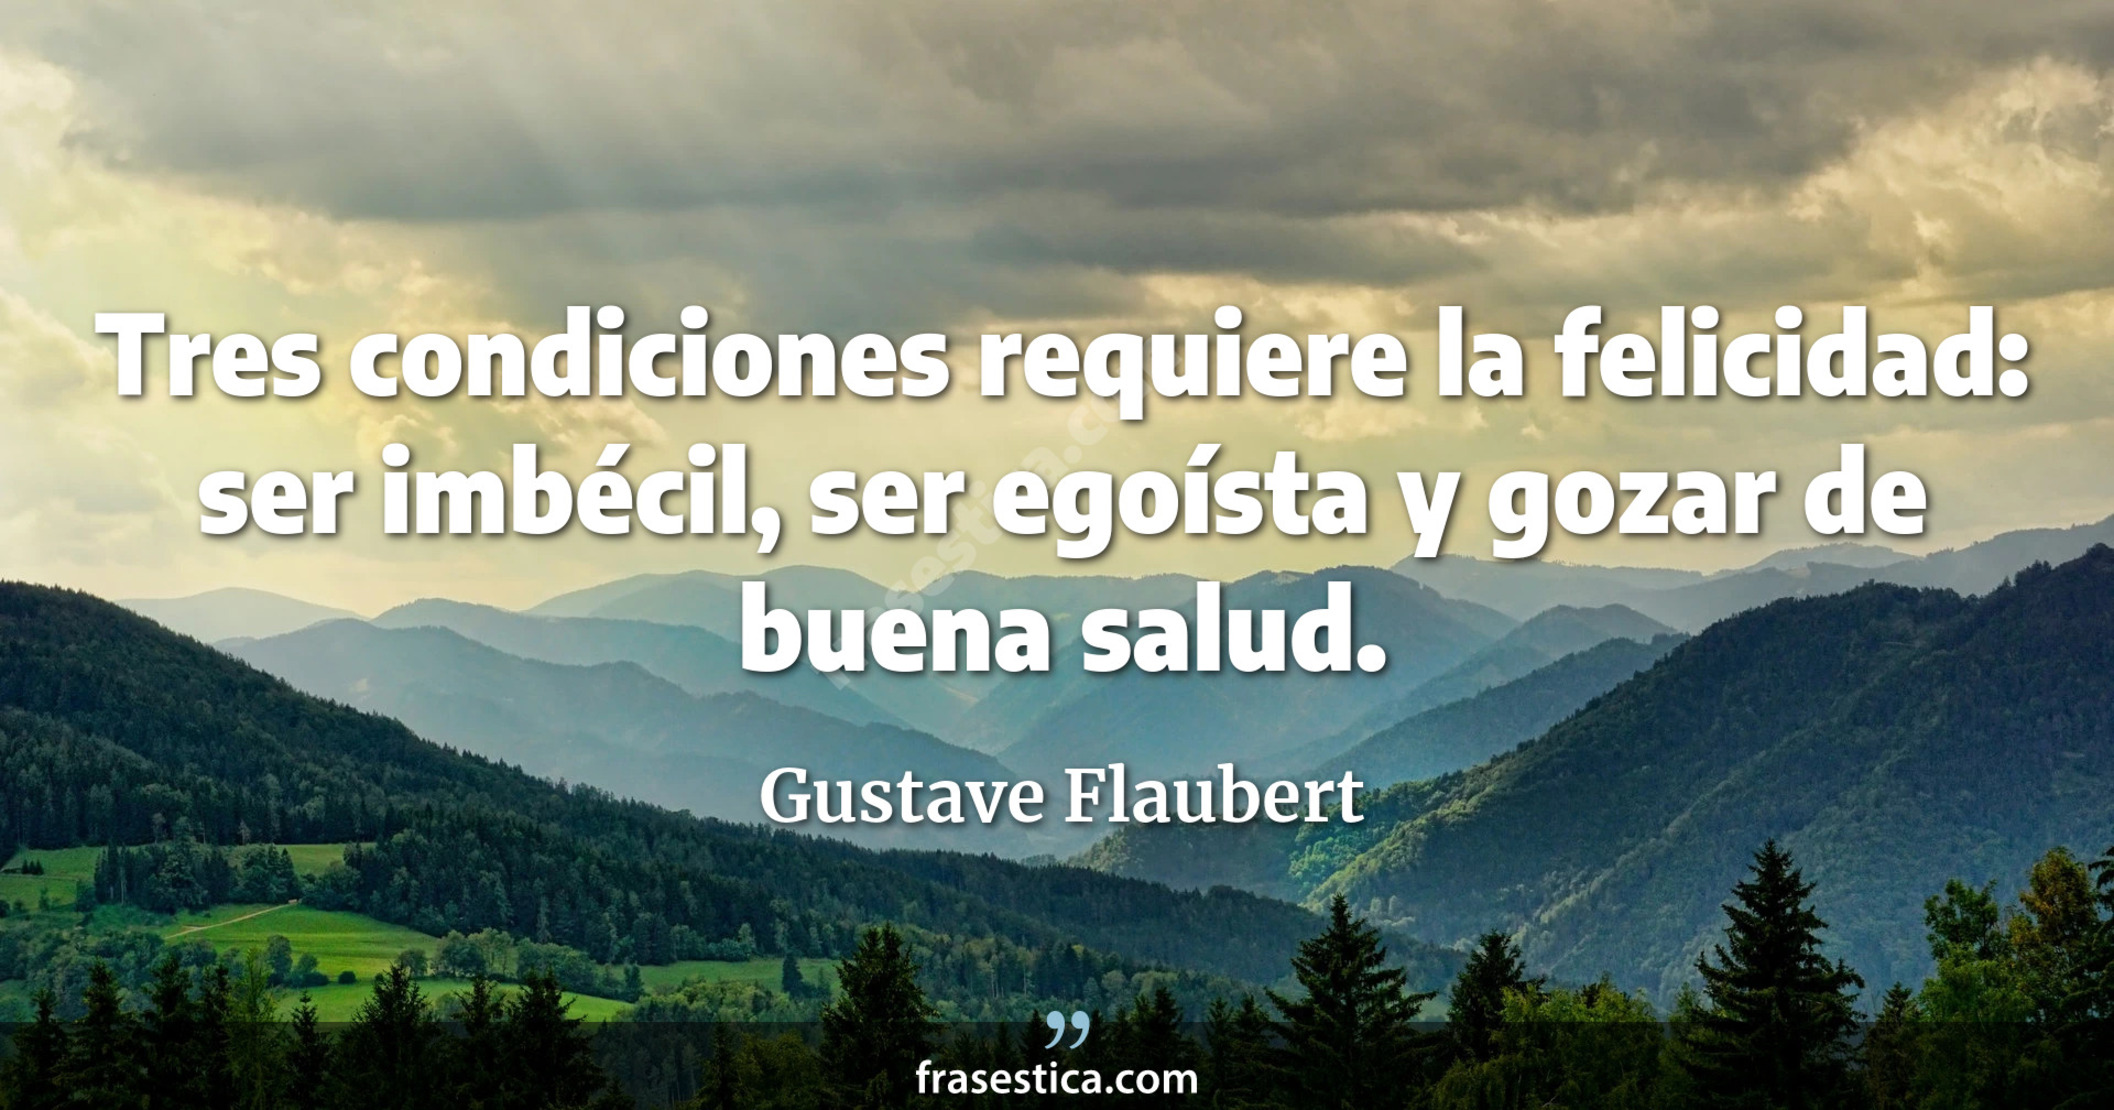 Tres condiciones requiere la felicidad: ser imbécil, ser egoísta y gozar de buena salud. - Gustave Flaubert